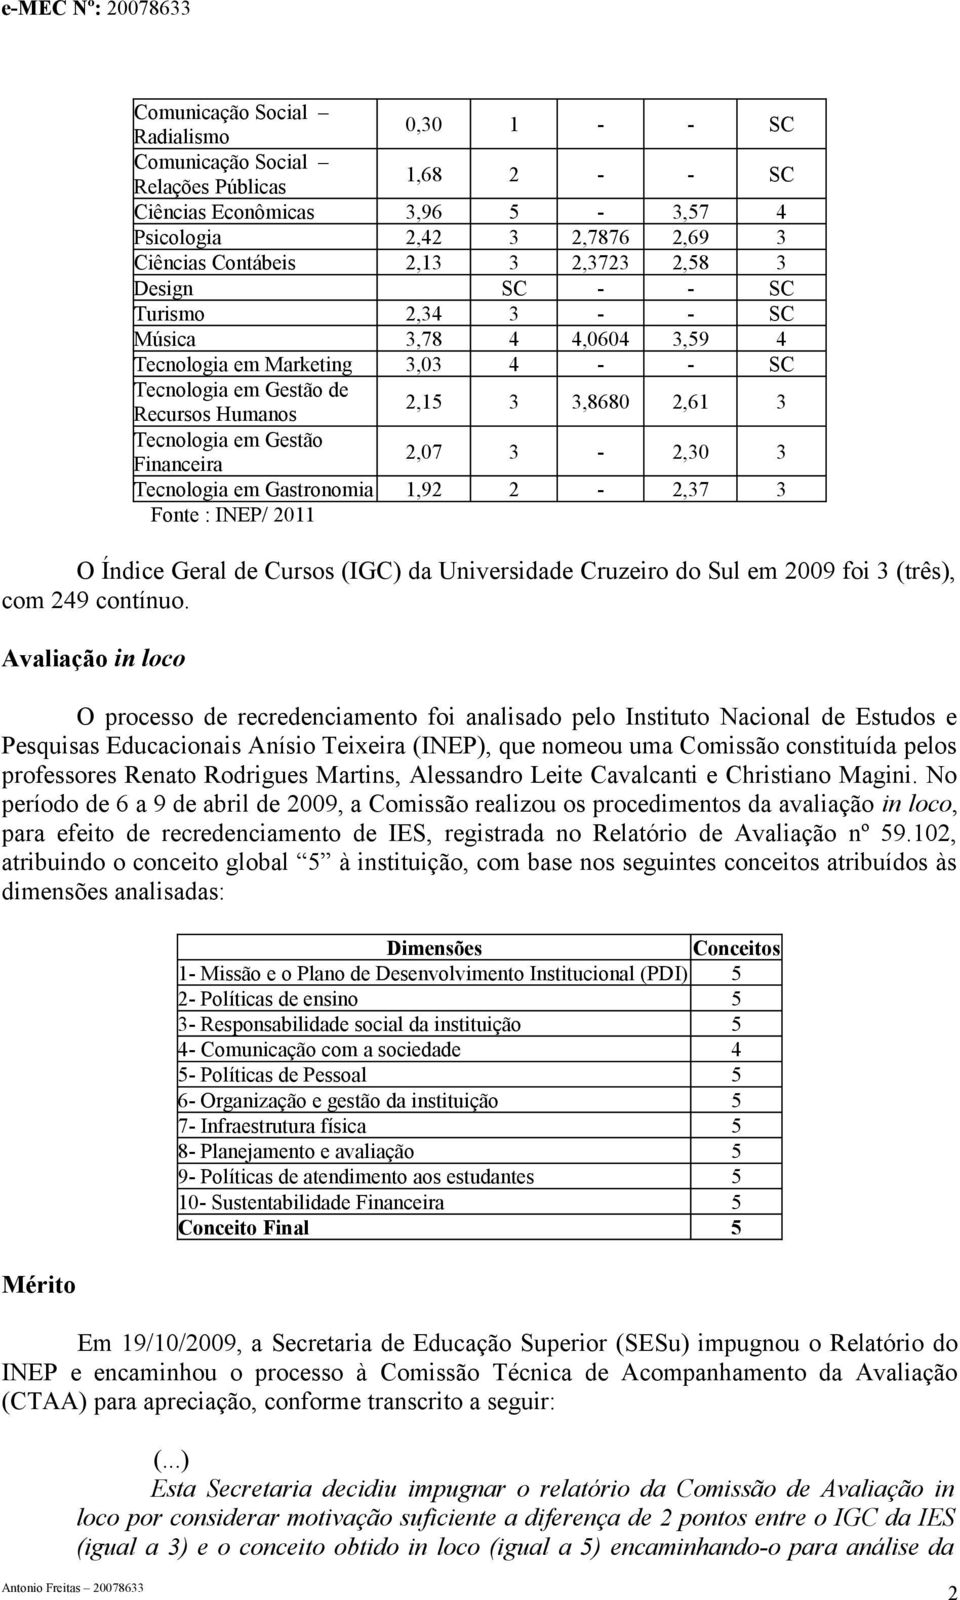 Gastronomia 1,92 2-2,37 3 Fonte : INEP/ 2011 O Índice Geral de Cursos (IGC) da Universidade Cruzeiro do Sul em 2009 foi 3 (três), com 249 contínuo.